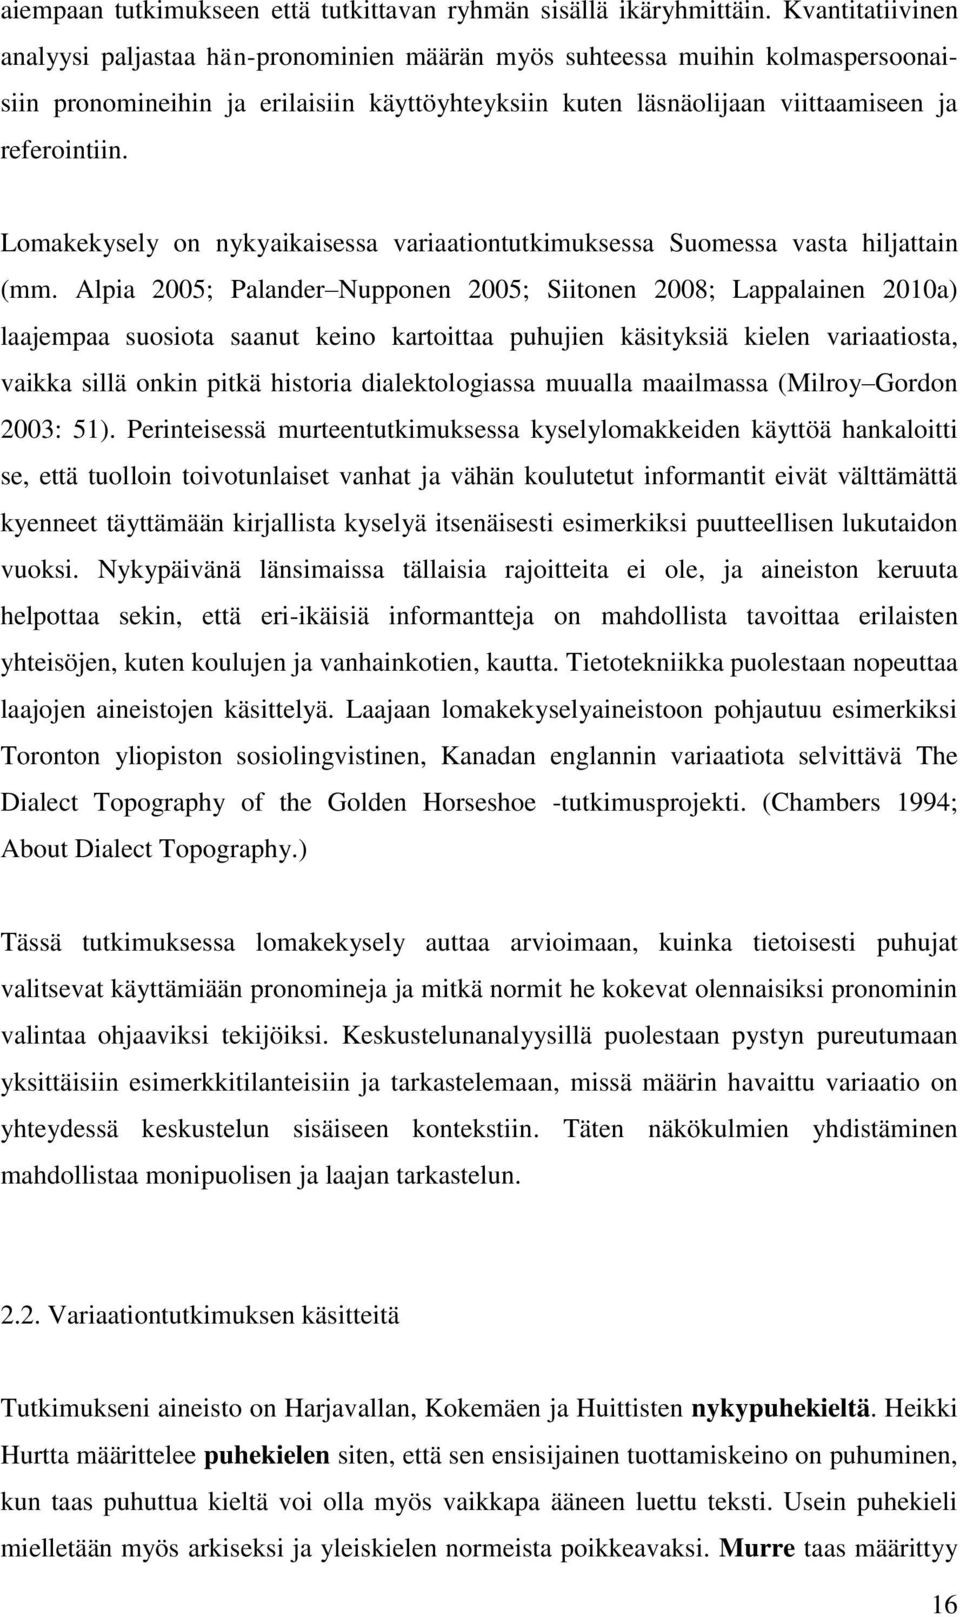 Lomakekysely on nykyaikaisessa variaationtutkimuksessa Suomessa vasta hiljattain (mm.